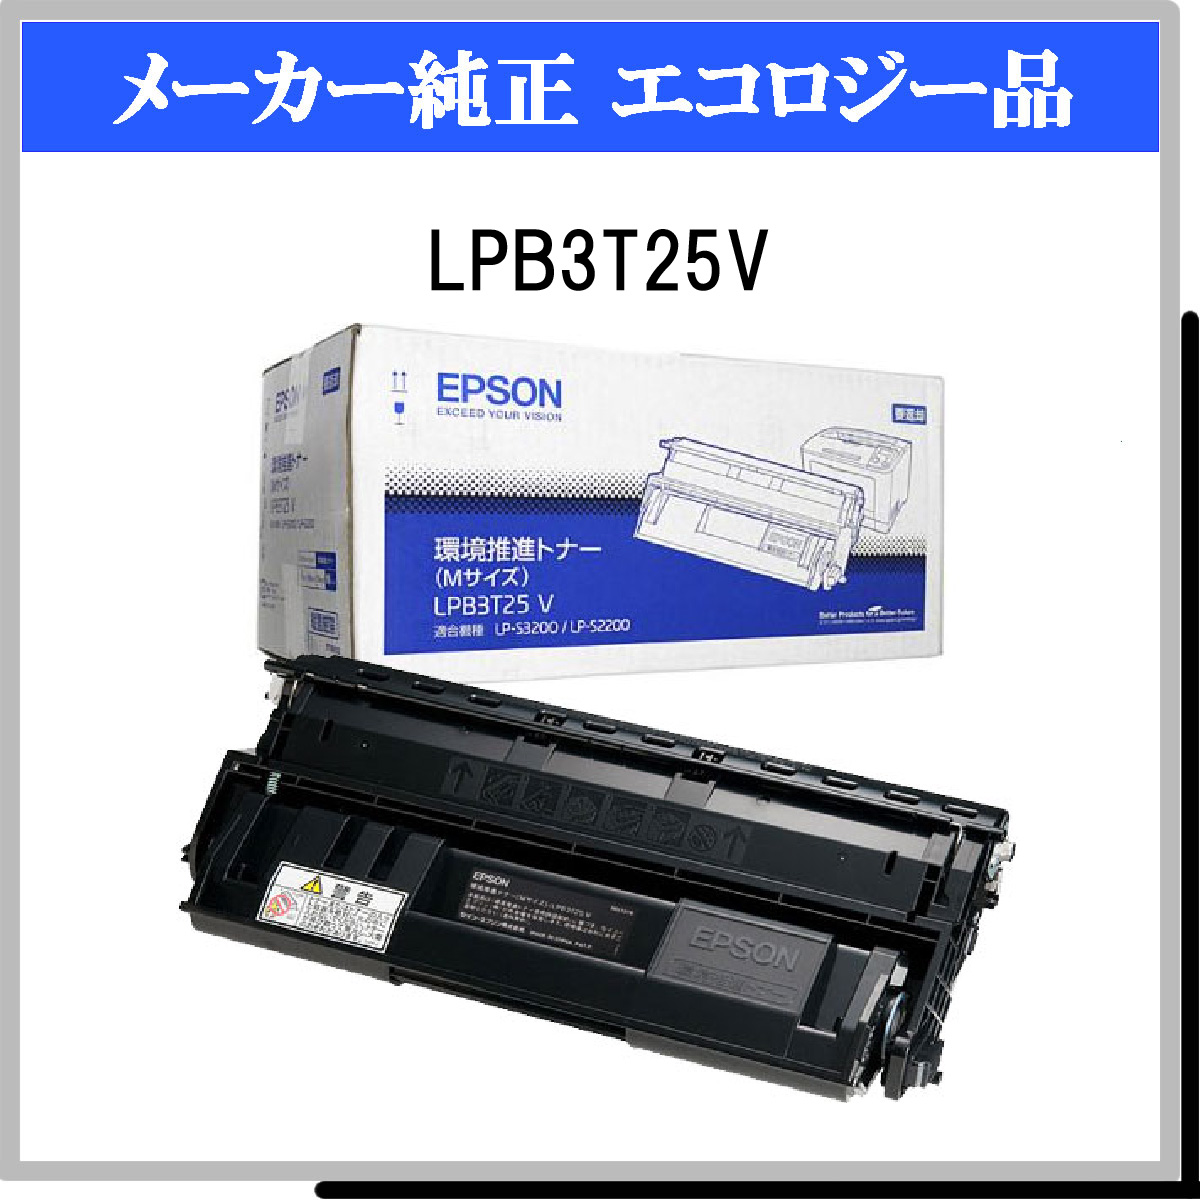 エプソン 純正トナー EPSON トナー LPB3T25V 新品未使用